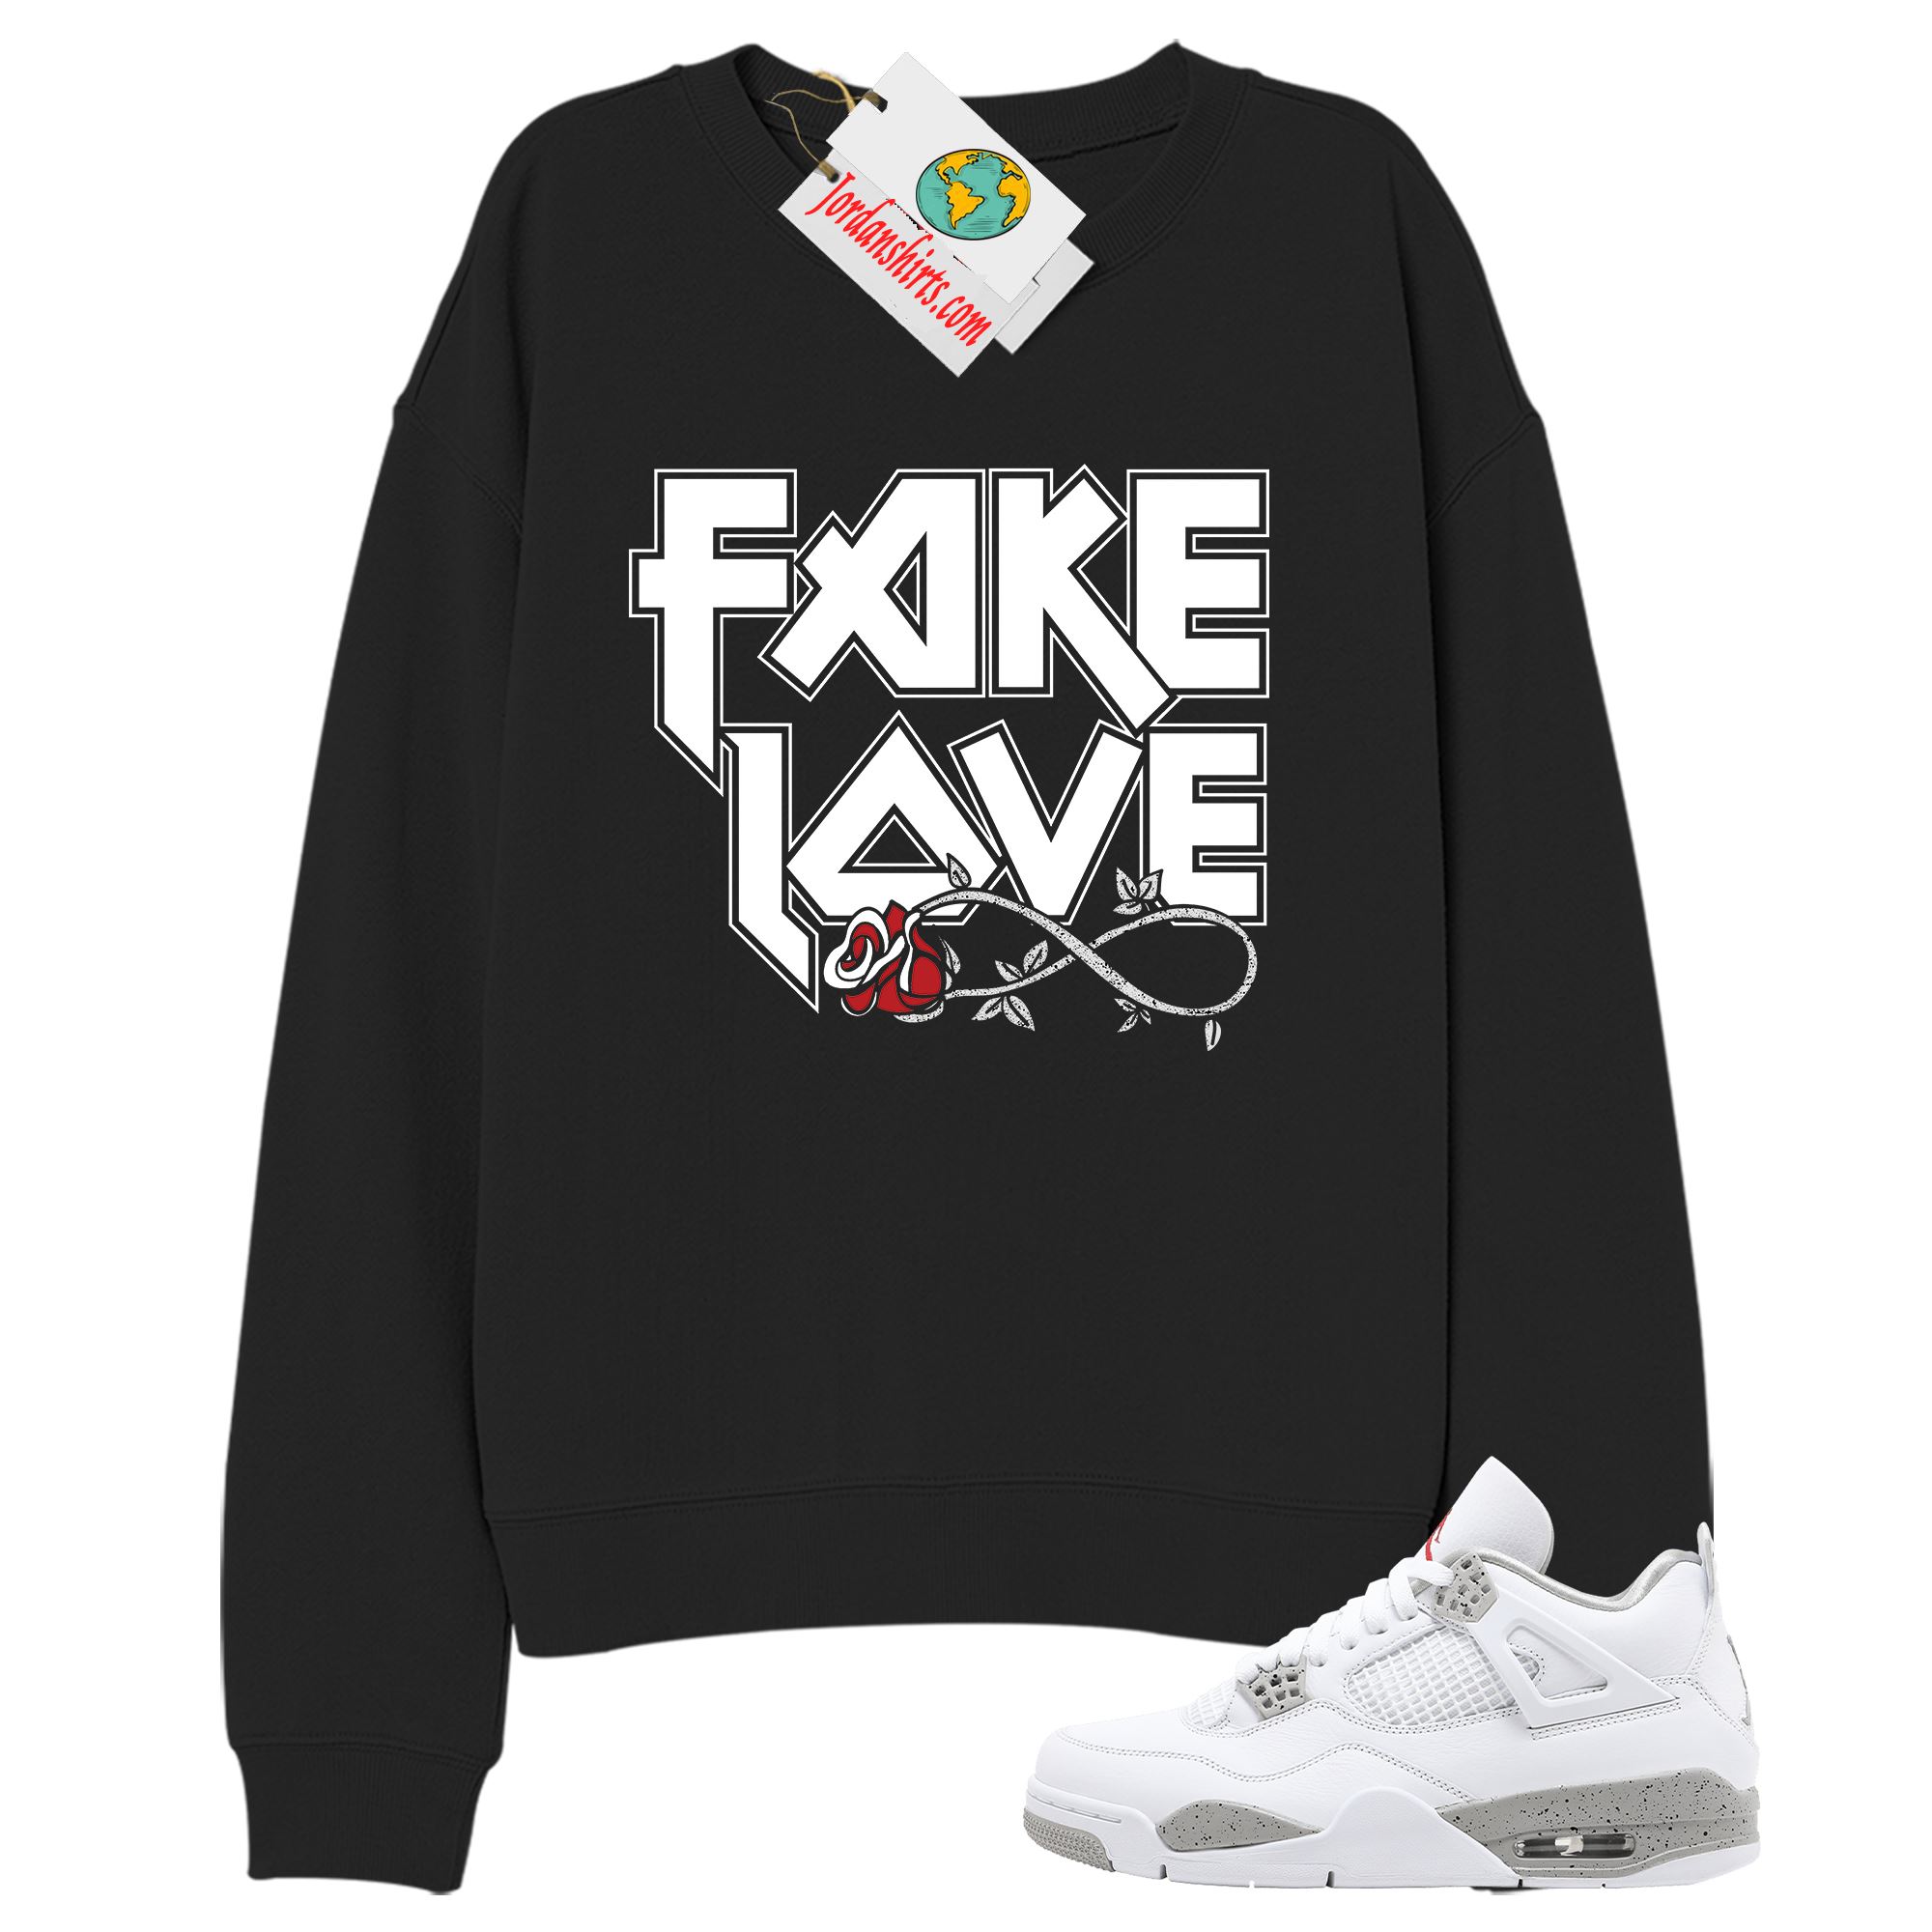 Jordan 4 Sweatshirt, Fake Love Infinity Rose Black Sweatshirt Air Jordan 4 White Oreo 4s Plus Size Up To 5xl